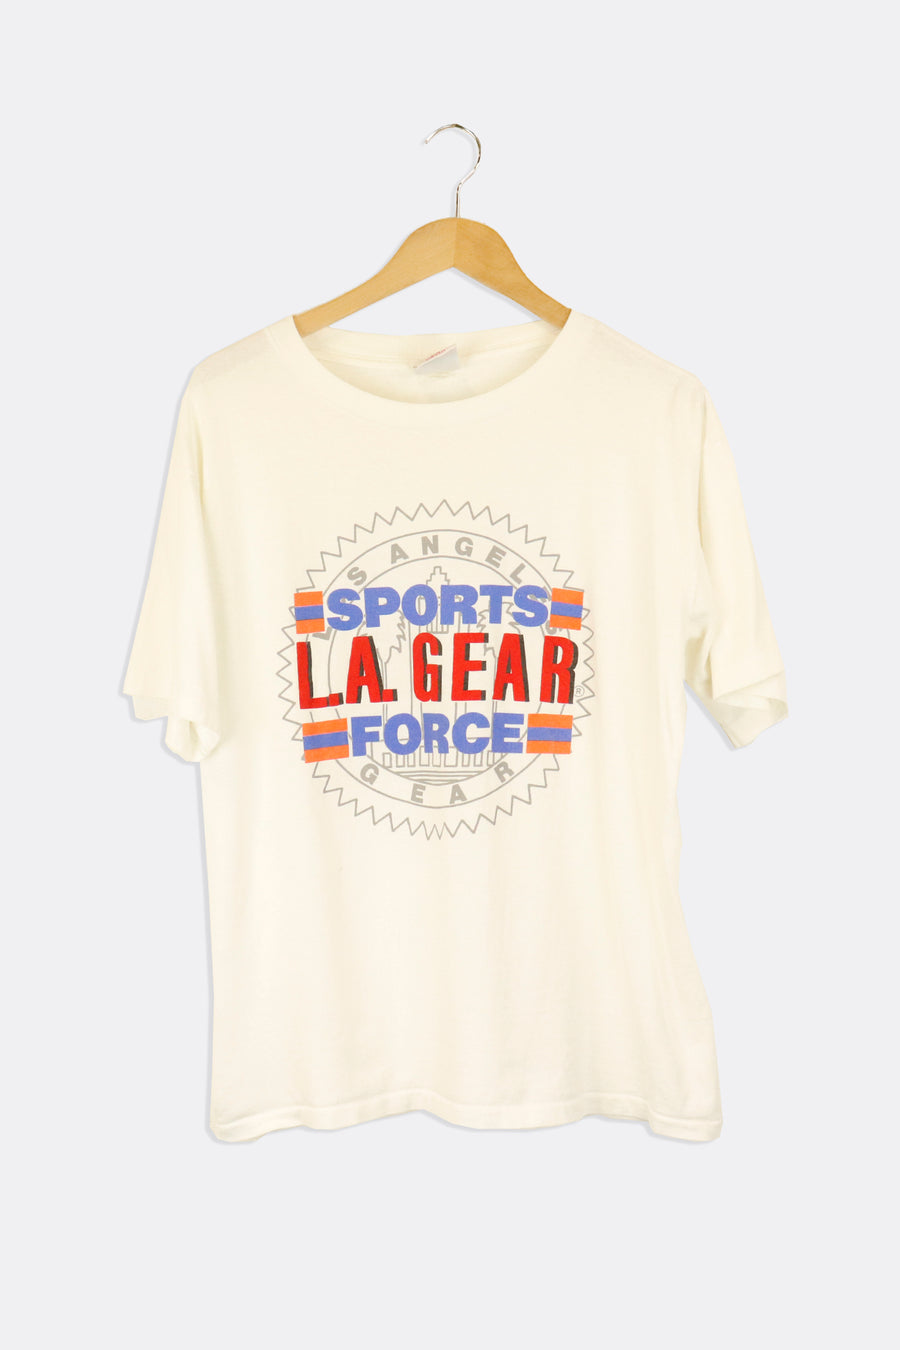 Vintage LA Sports Gear Force Outline Of LA Vinyl T Shirt Sz L